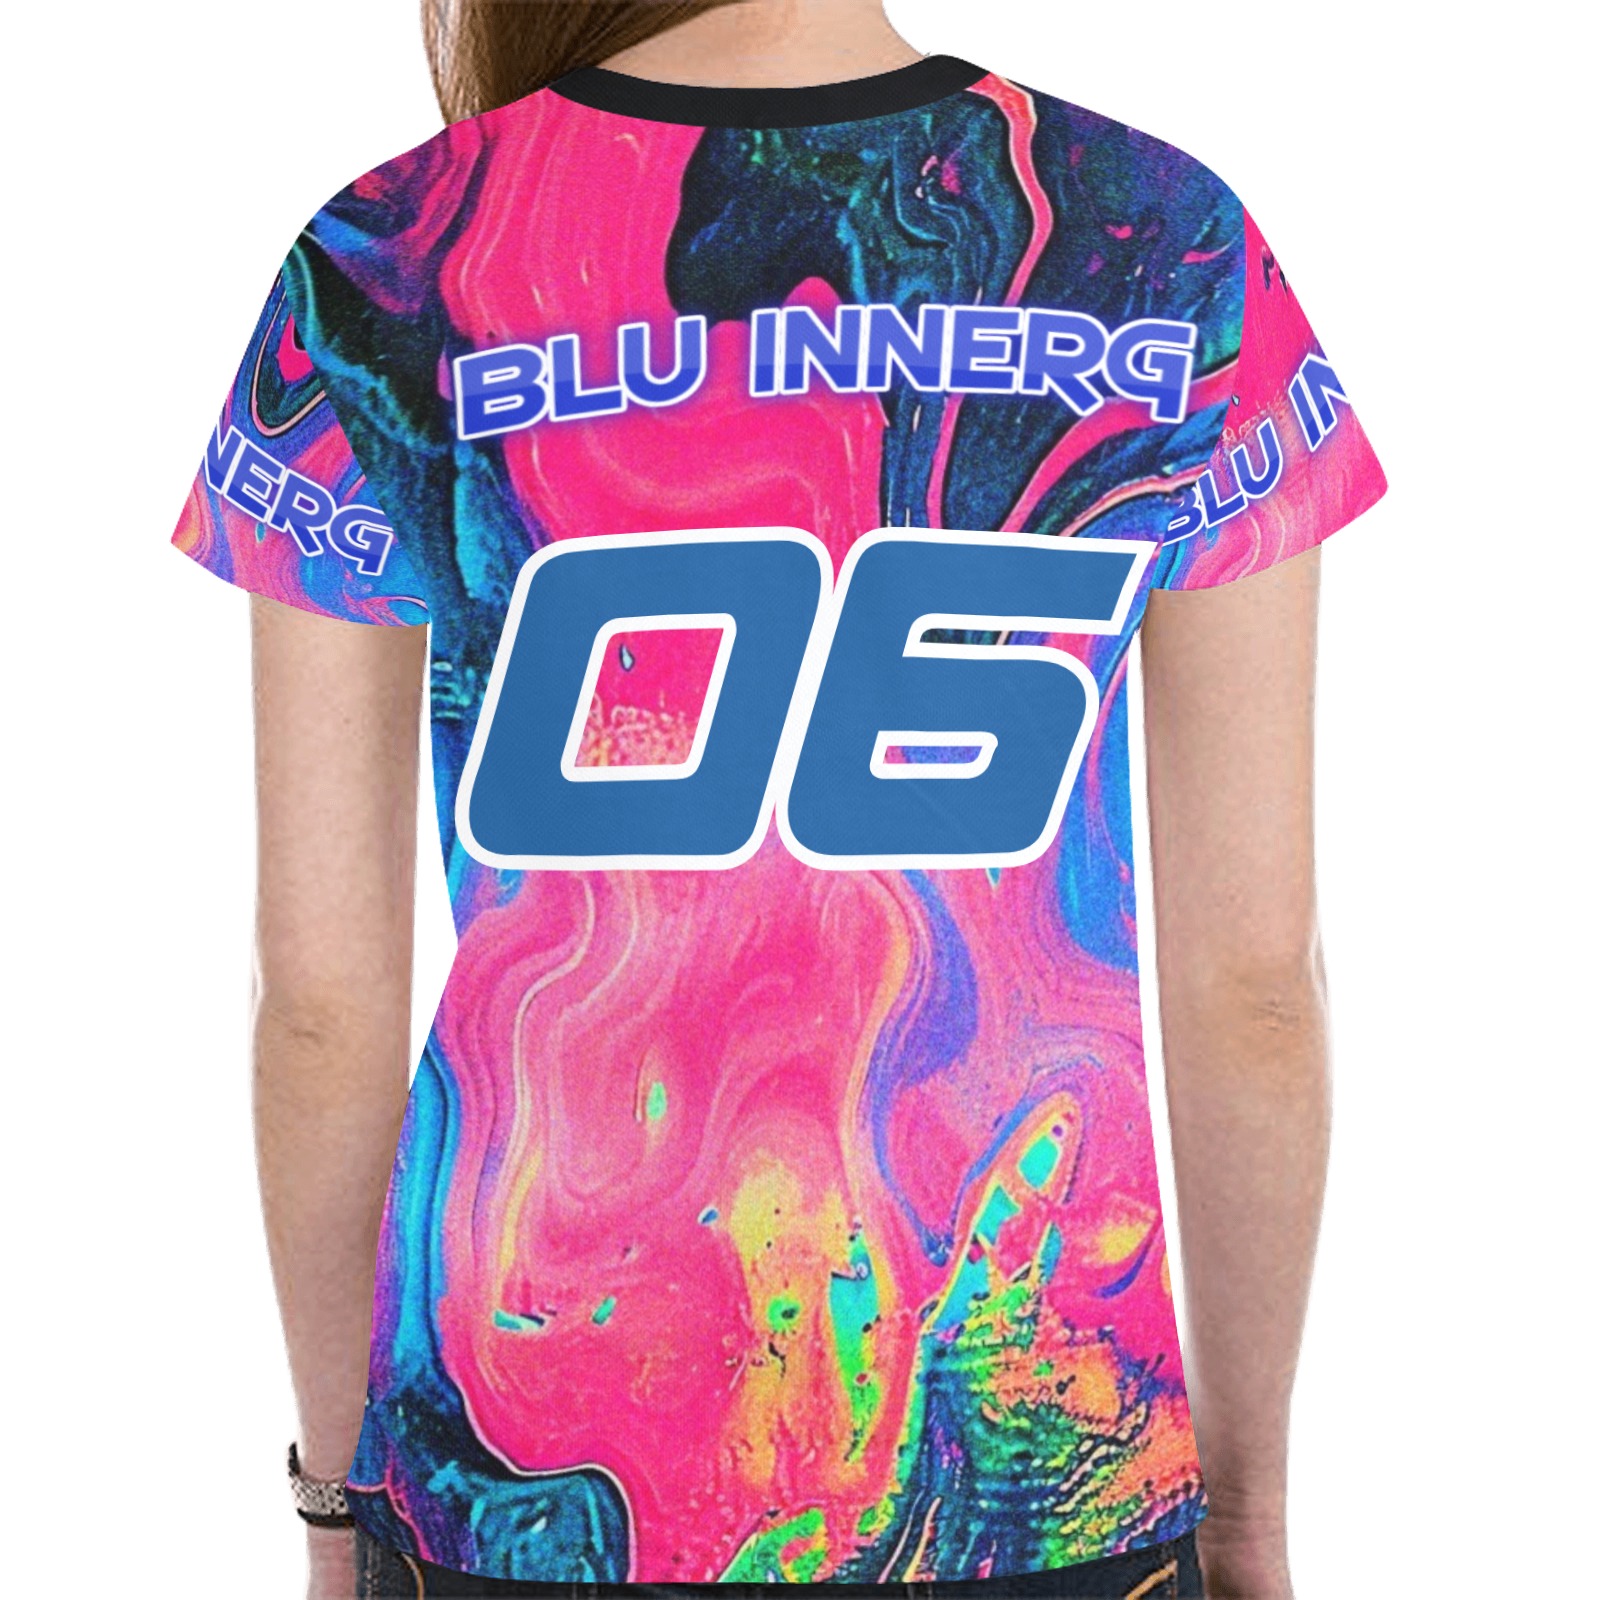 Blu InnerG Tie-Dye New All Over Print T-shirt for Women (Model T45)